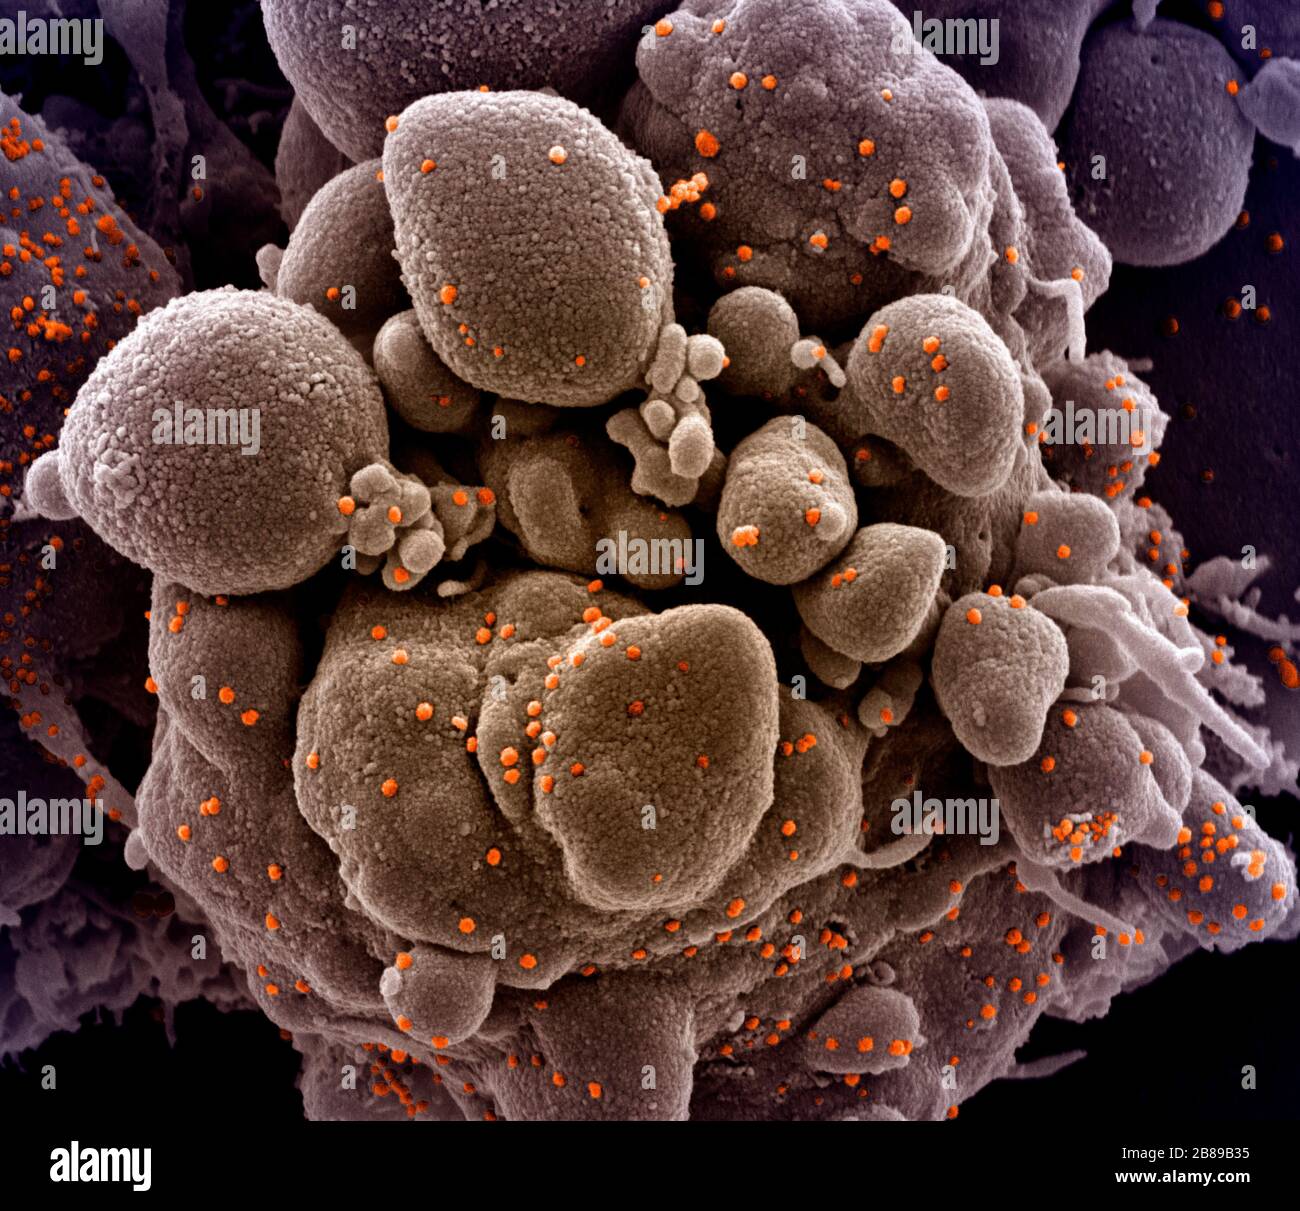 Una micrografia elettronica a trasmissione di COVID-19, nuovo coronavirus, una cellula apoptotica fortemente infettata con particelle di virus SARS-COV-2, isolata da un campione di paziente presso il NIAID Integrated Research Facility 19 marzo 2020 a Fort Detrick, Maryland. Foto Stock